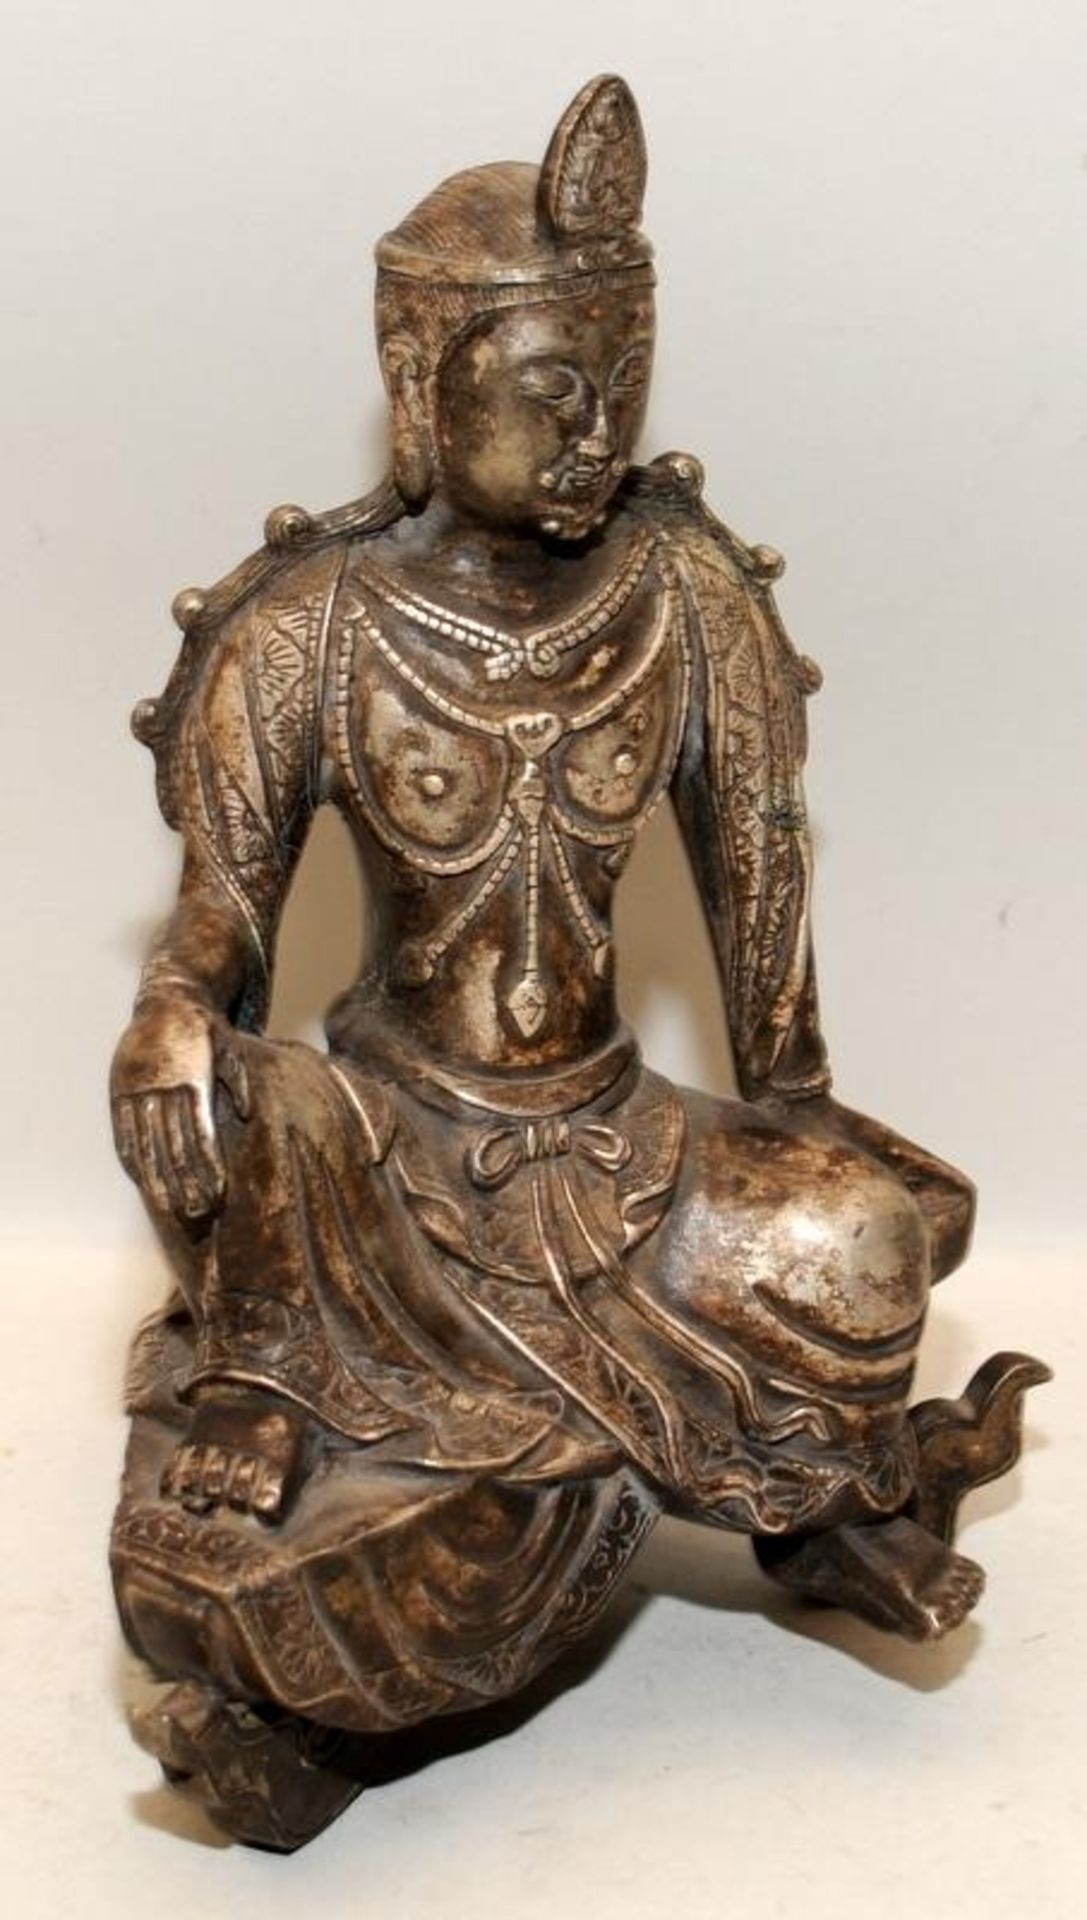 Vintage cast metal seated Tibetan Buddhist figure 24cms tall - Image 2 of 3